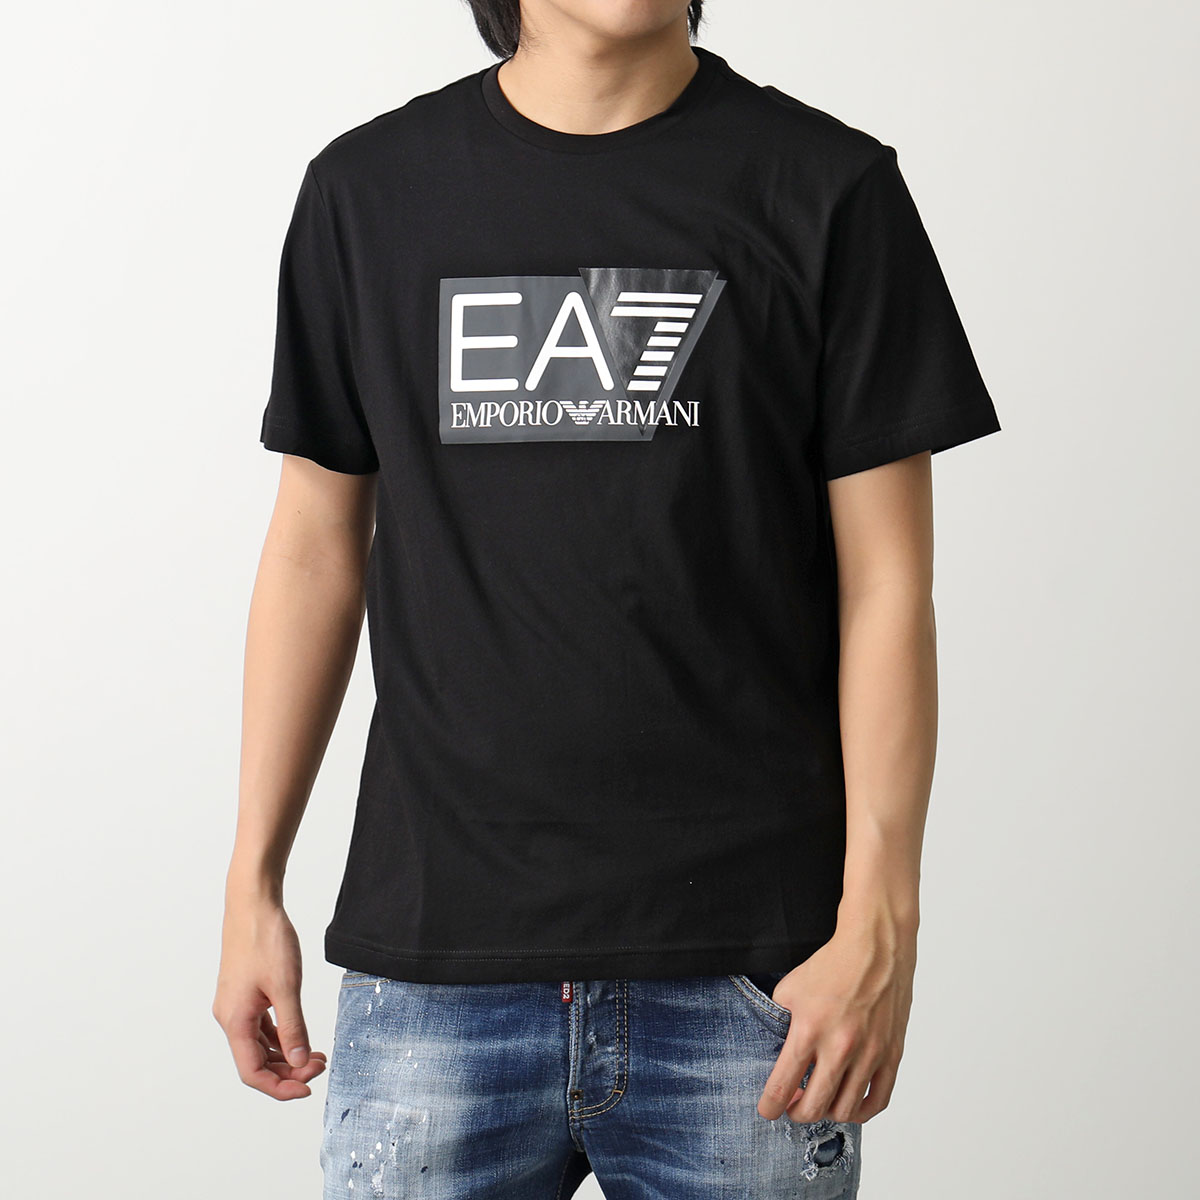 EA7 EMPORIO ARMANI エアセッテ エンポリオアルマーニ Tシャツ 3DPT81 PJM9Z メンズ 半袖 カットソー クルーネック  ロゴT コットン カラー2色